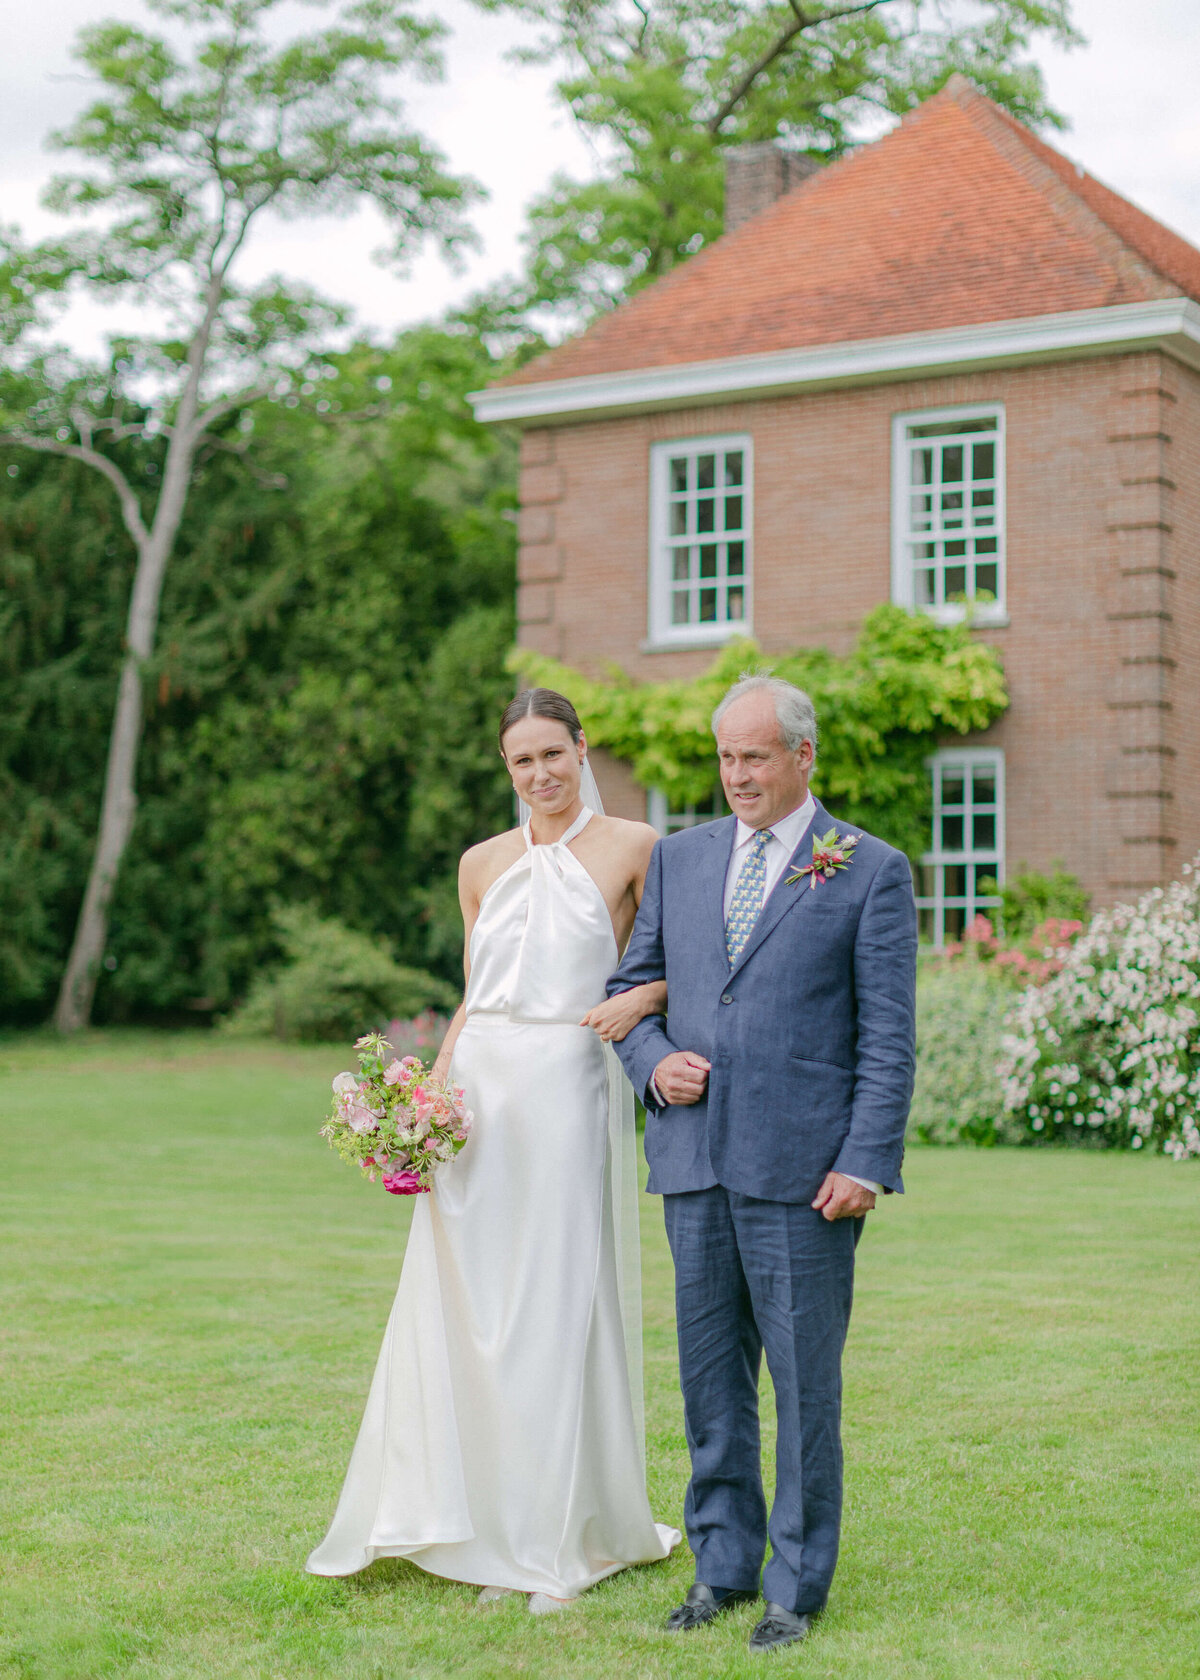 chloe-winstanley-weddings-outdoor-ceremony-home-father-bride-aisle